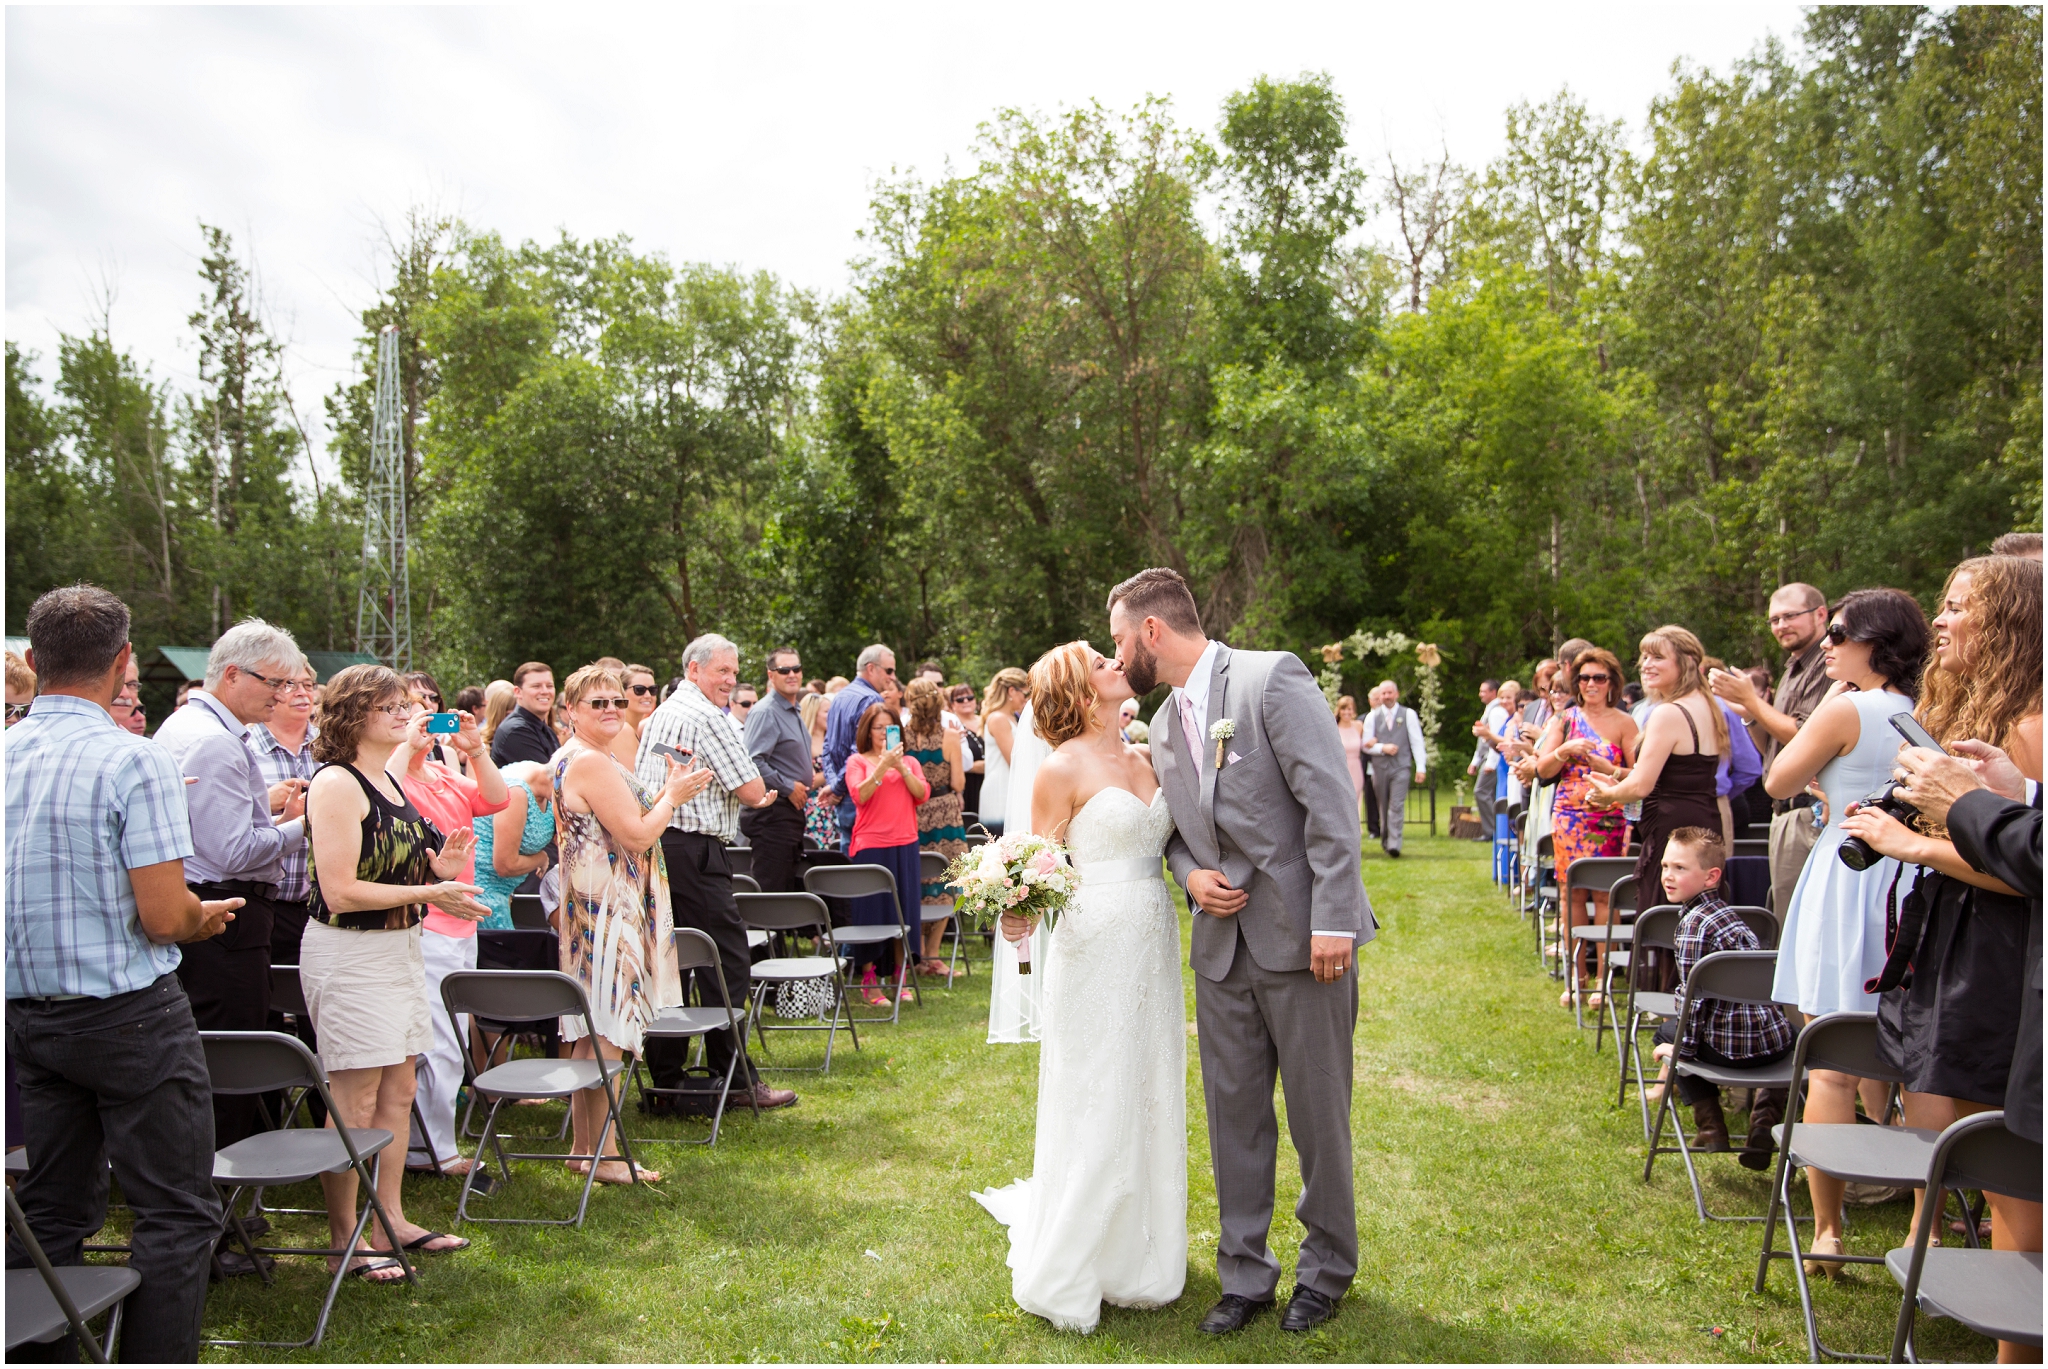 ots edmonton outdoor wedding ceremony photos